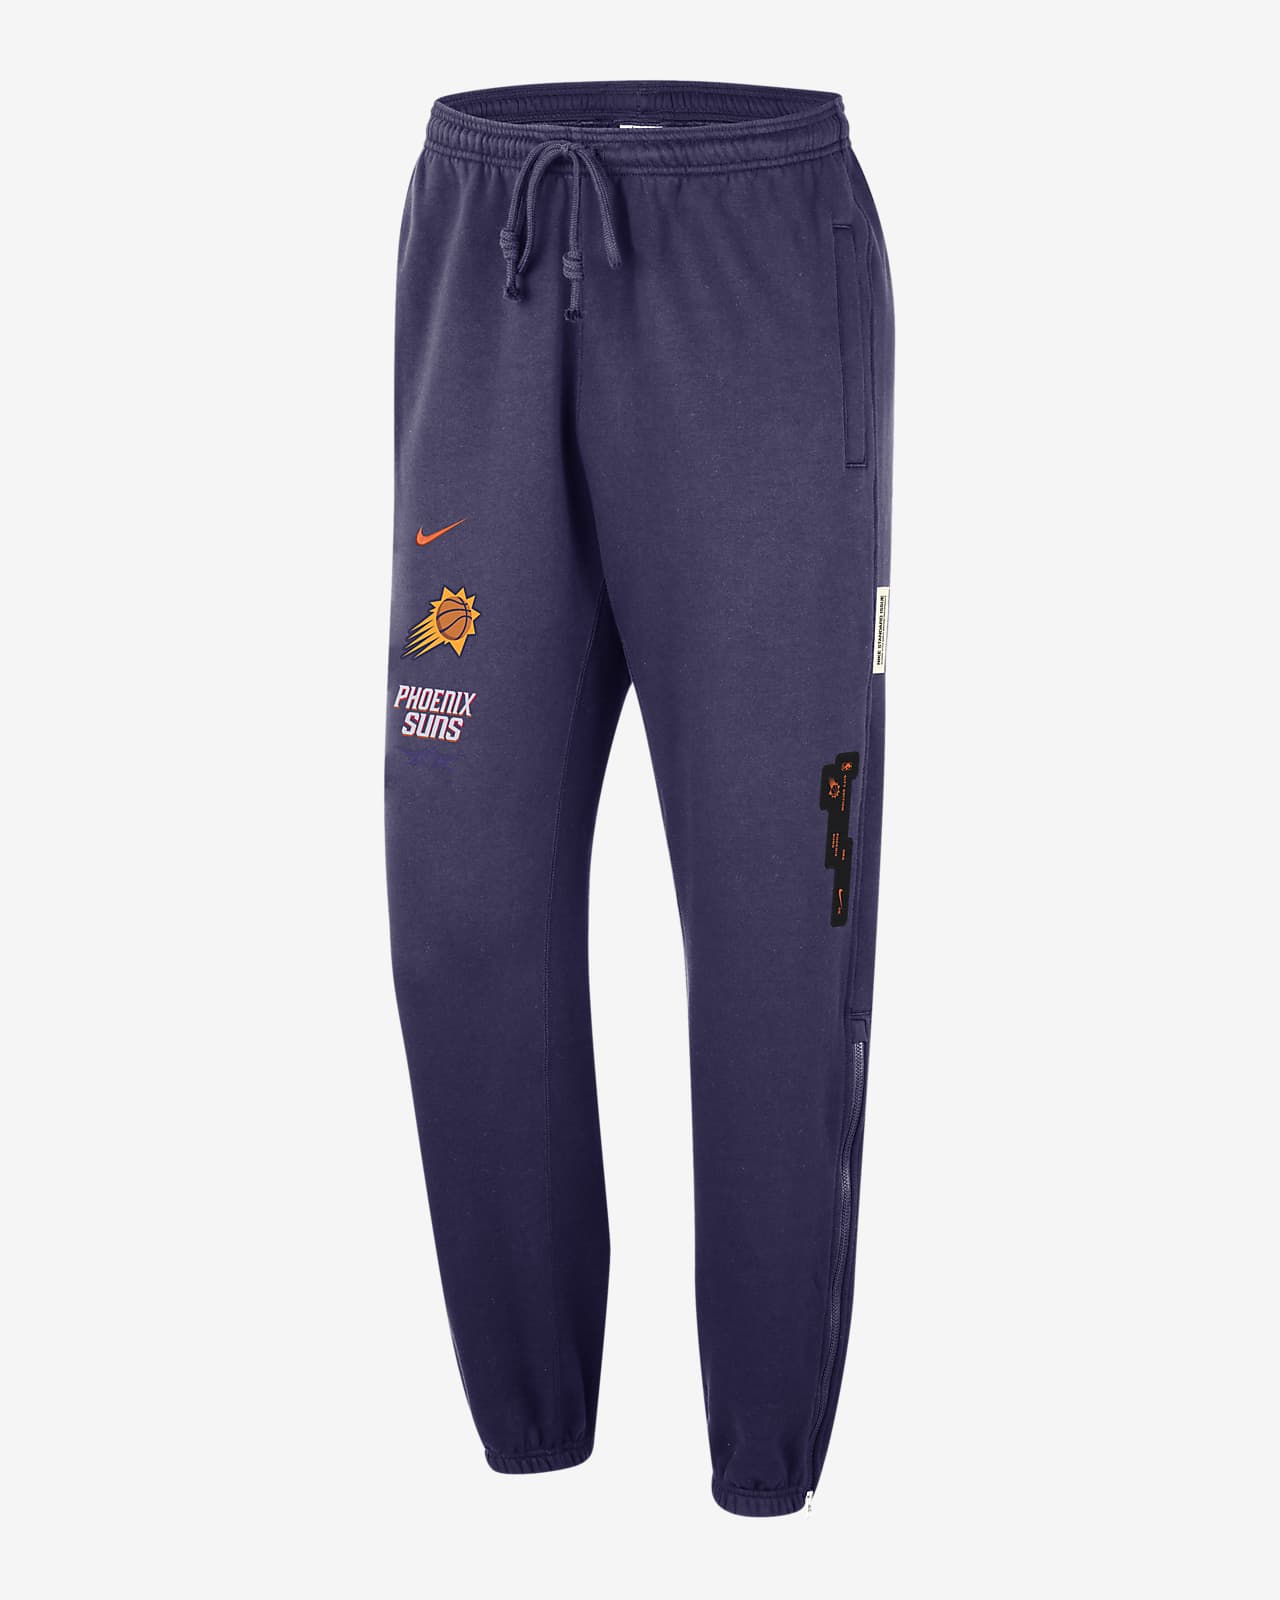 Pantaloni Phoenix Suns Standard Issue 2023/24 City Edition Courtside Nike NBA – Uomo